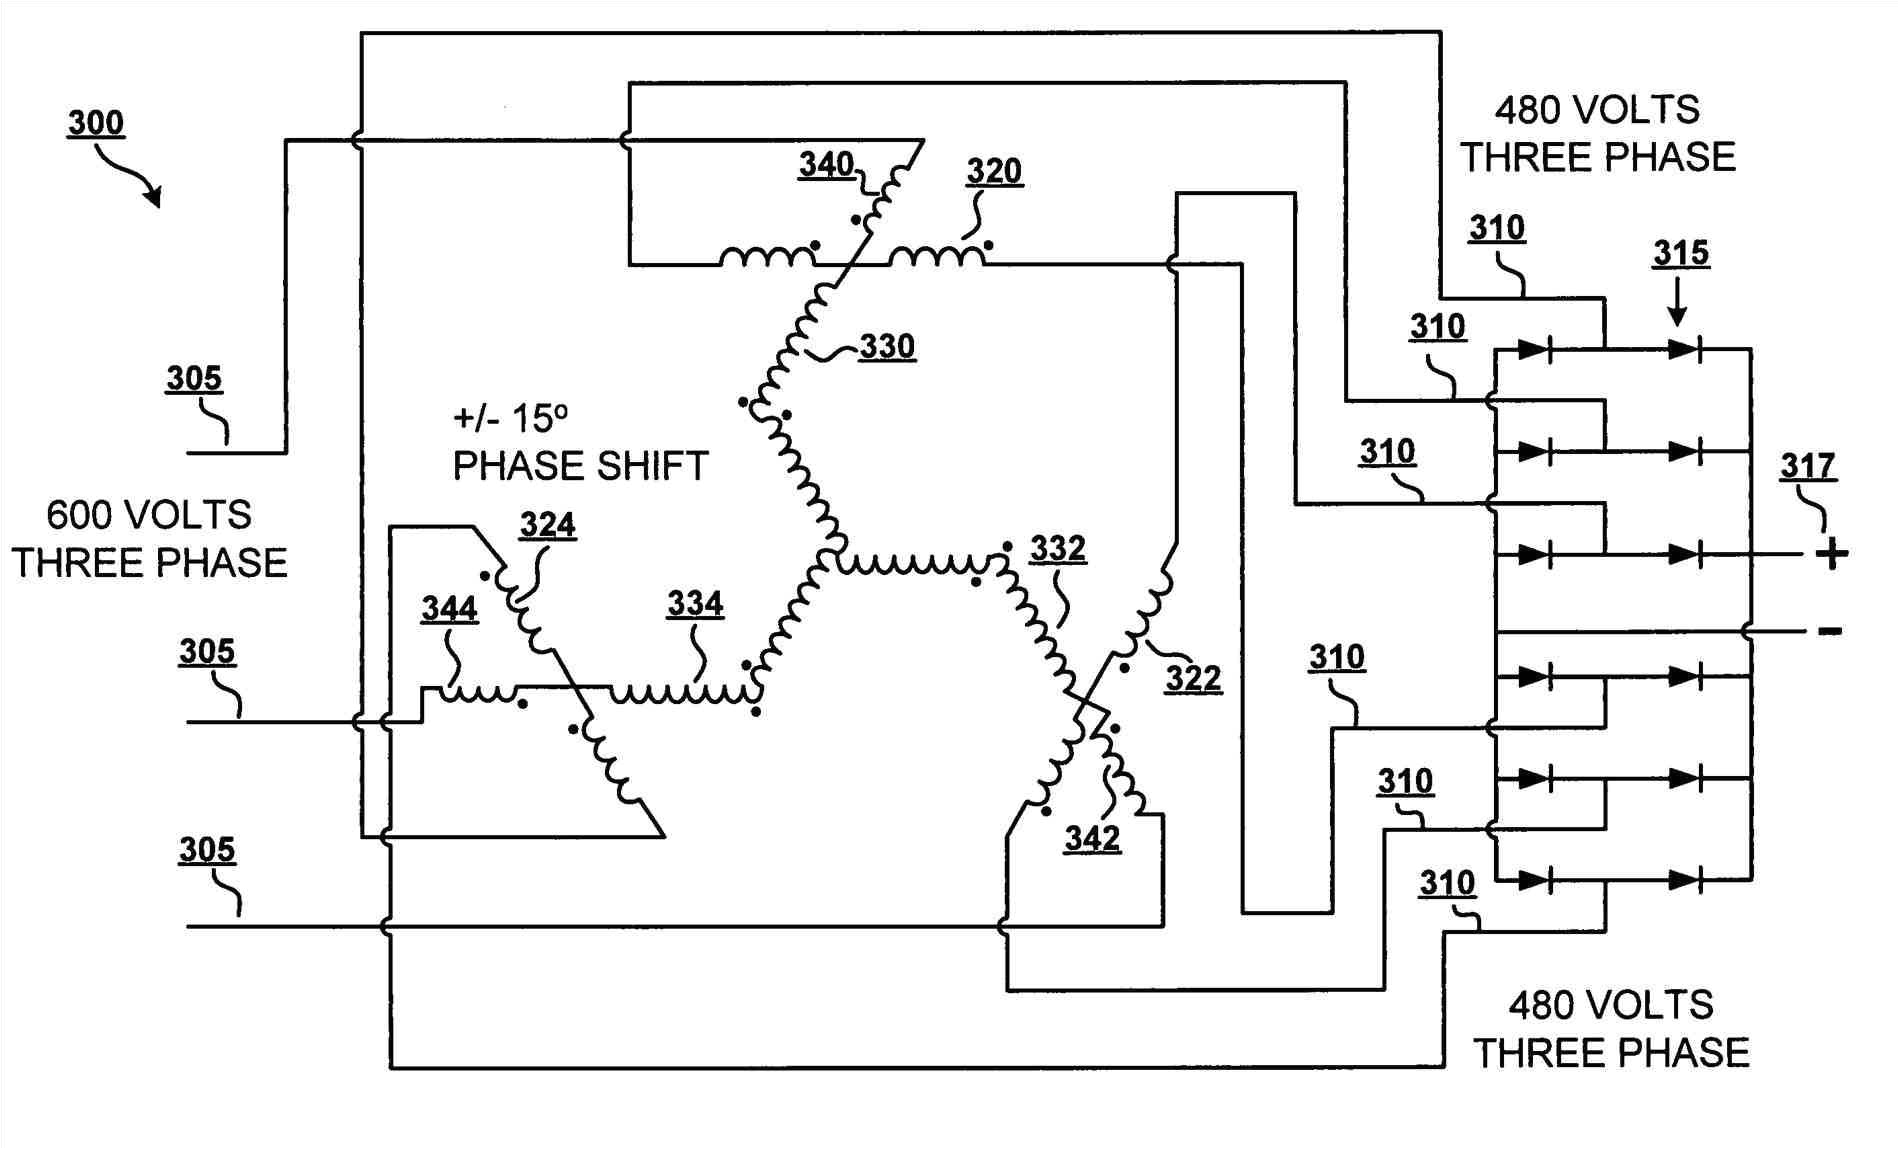 2wire alternator diagram yamaha wiring diagram2wire alternator diagram yamaha wiring schematic diagramwrg 1757 2wire alternator